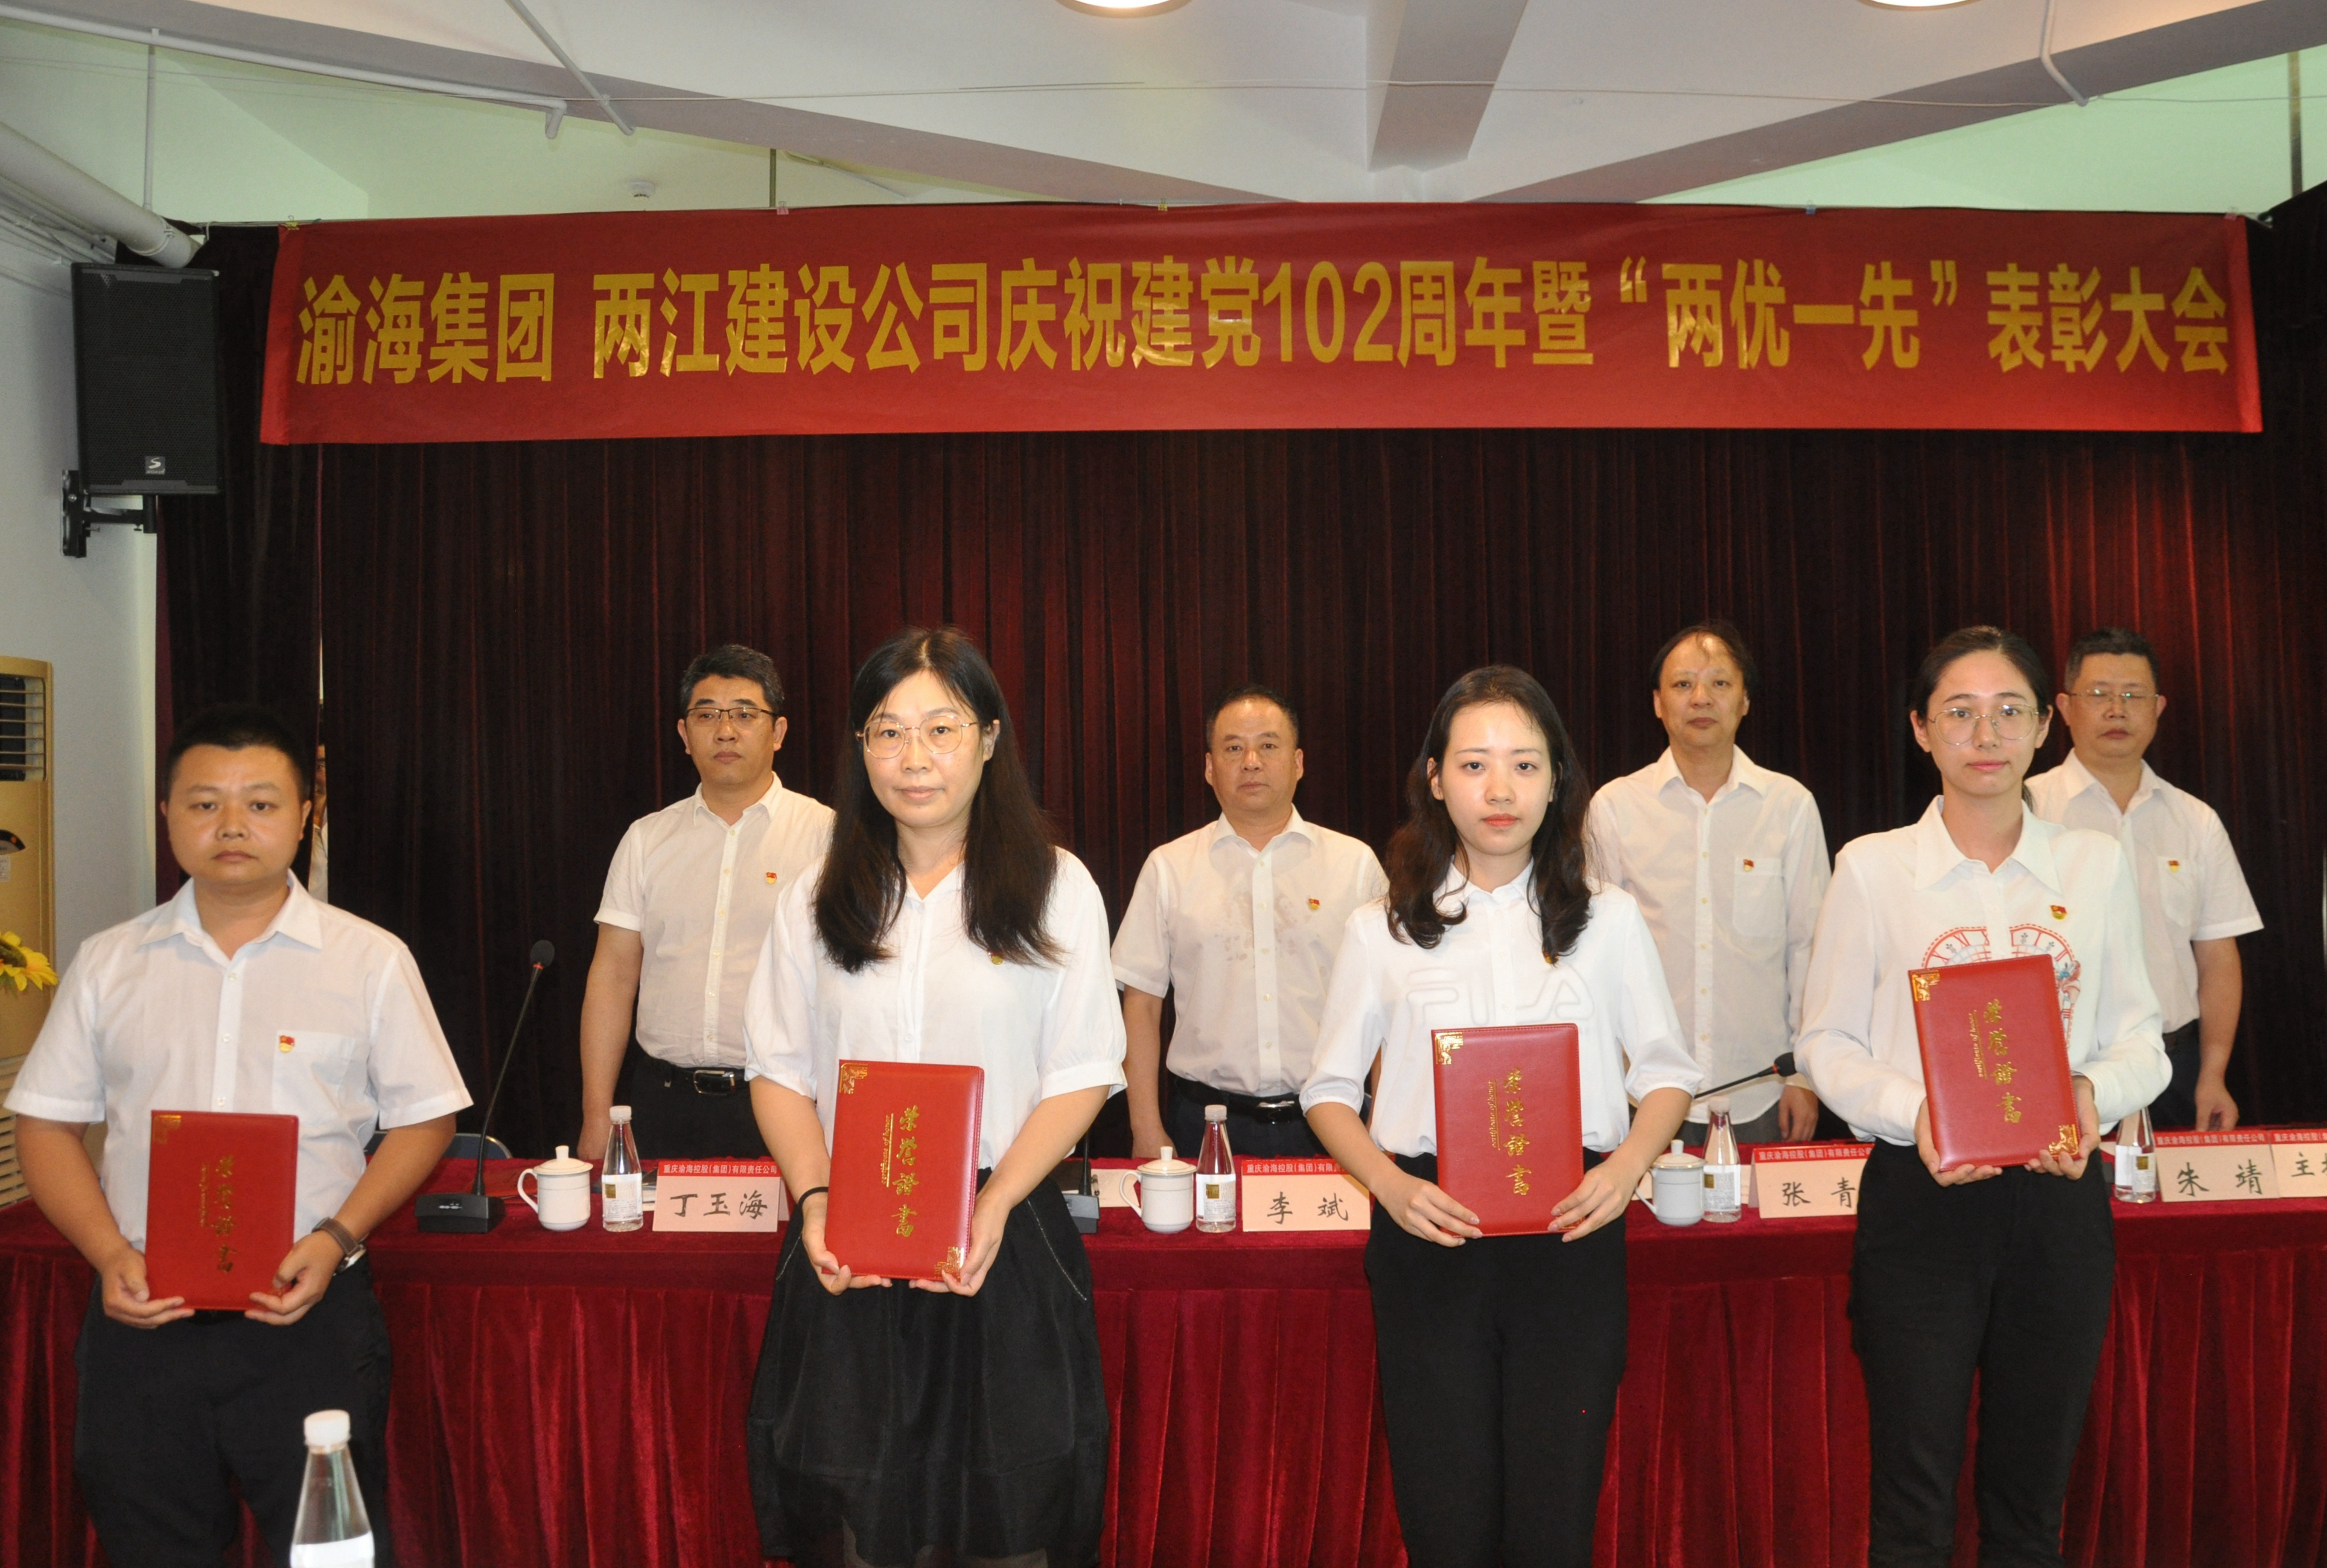 集團召開慶祝中國共產黨成立102周年暨 “兩優一先”表彰會